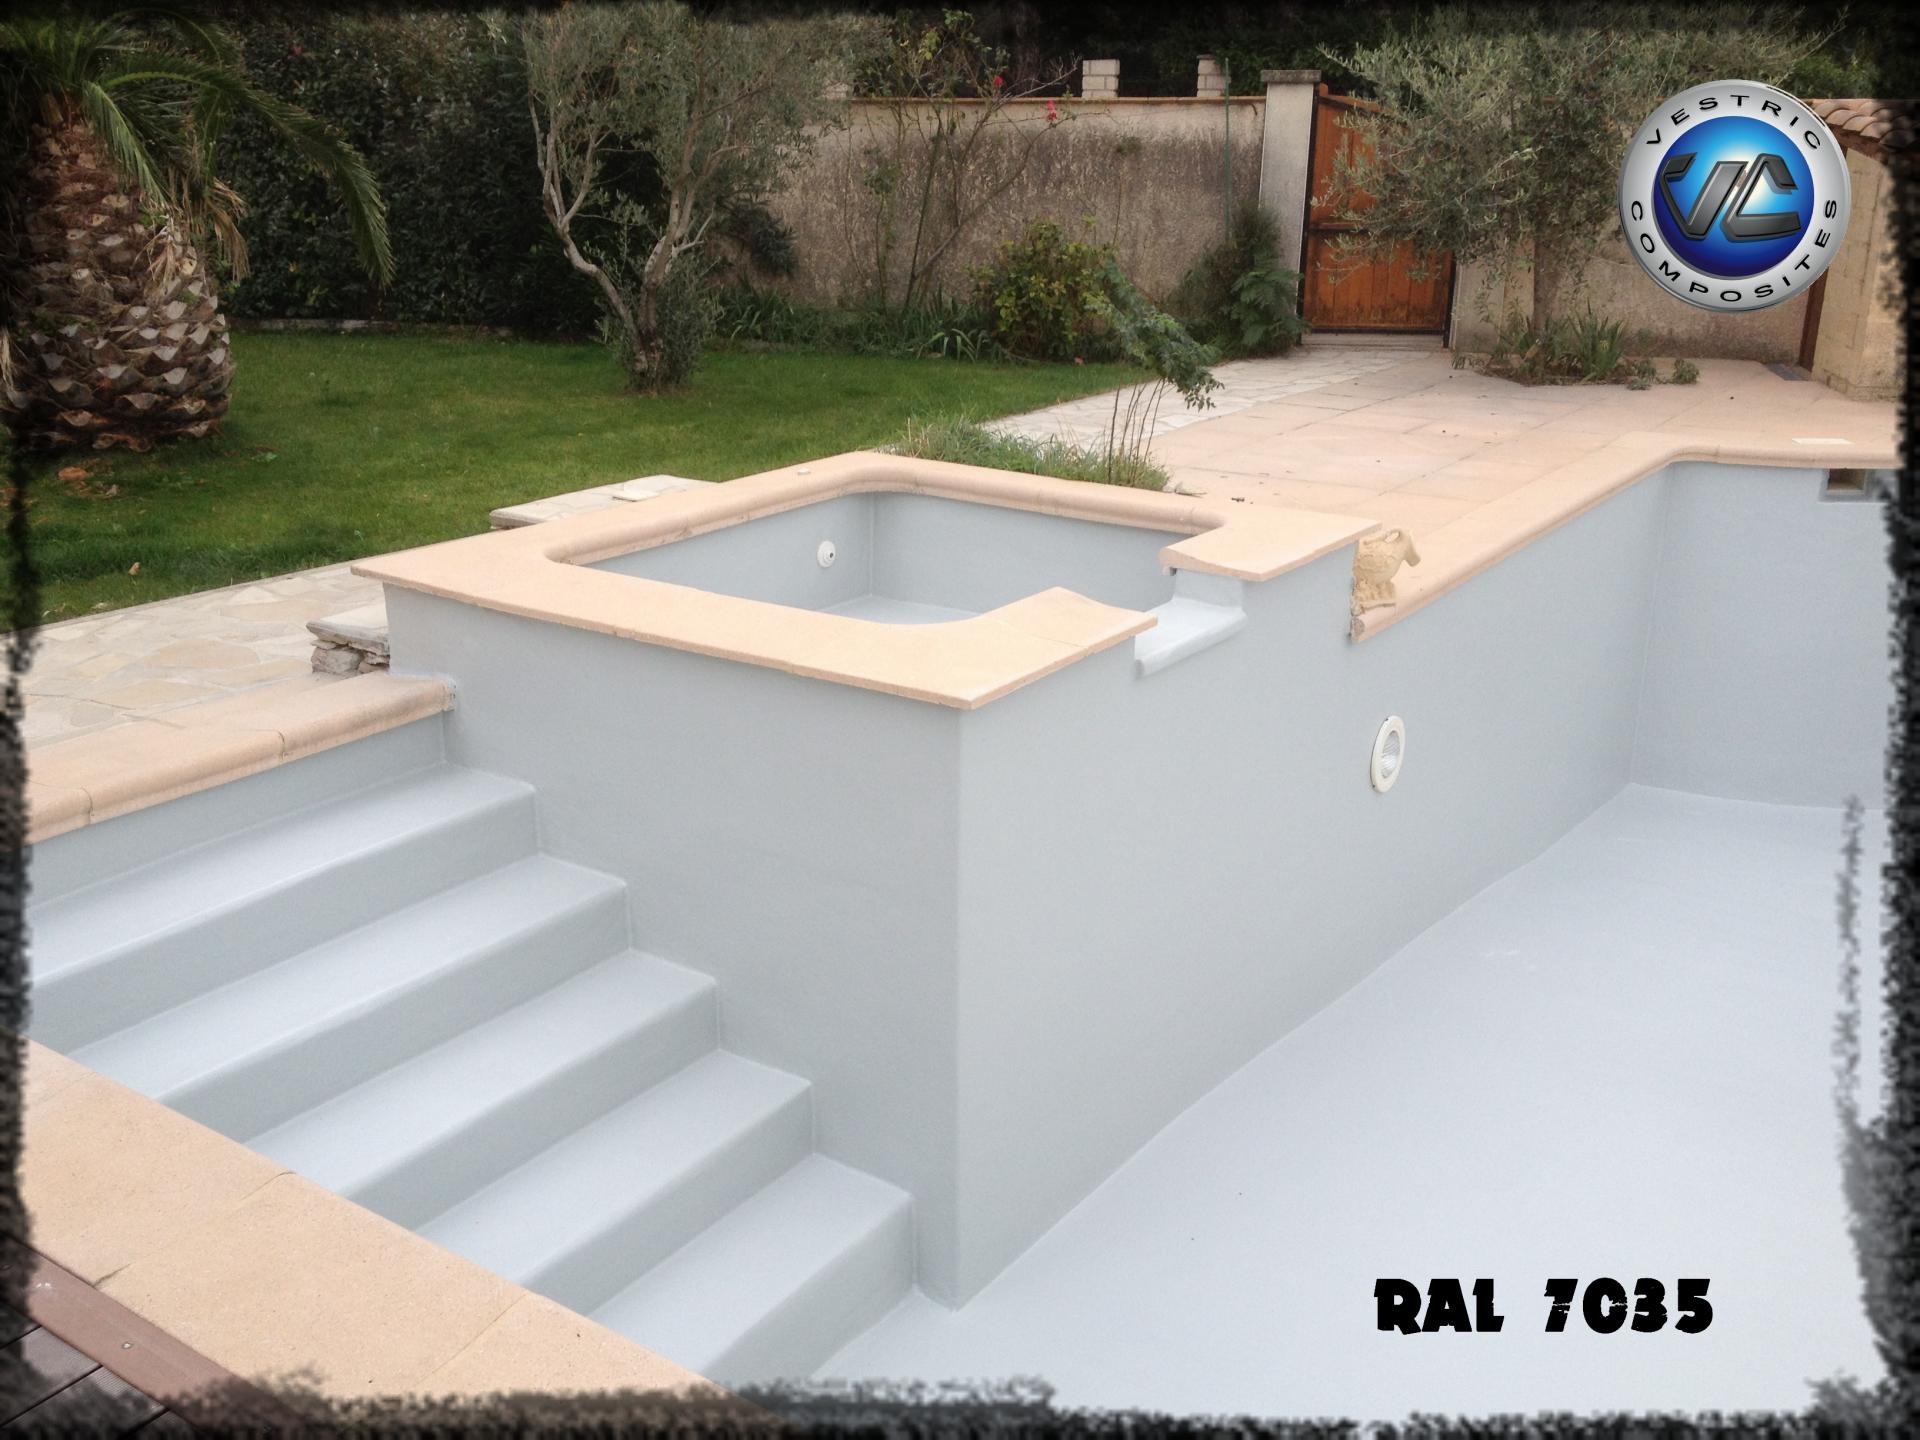 Ral 7035 gris clair piscine en eau couleur resine gel coat vestric composites 6